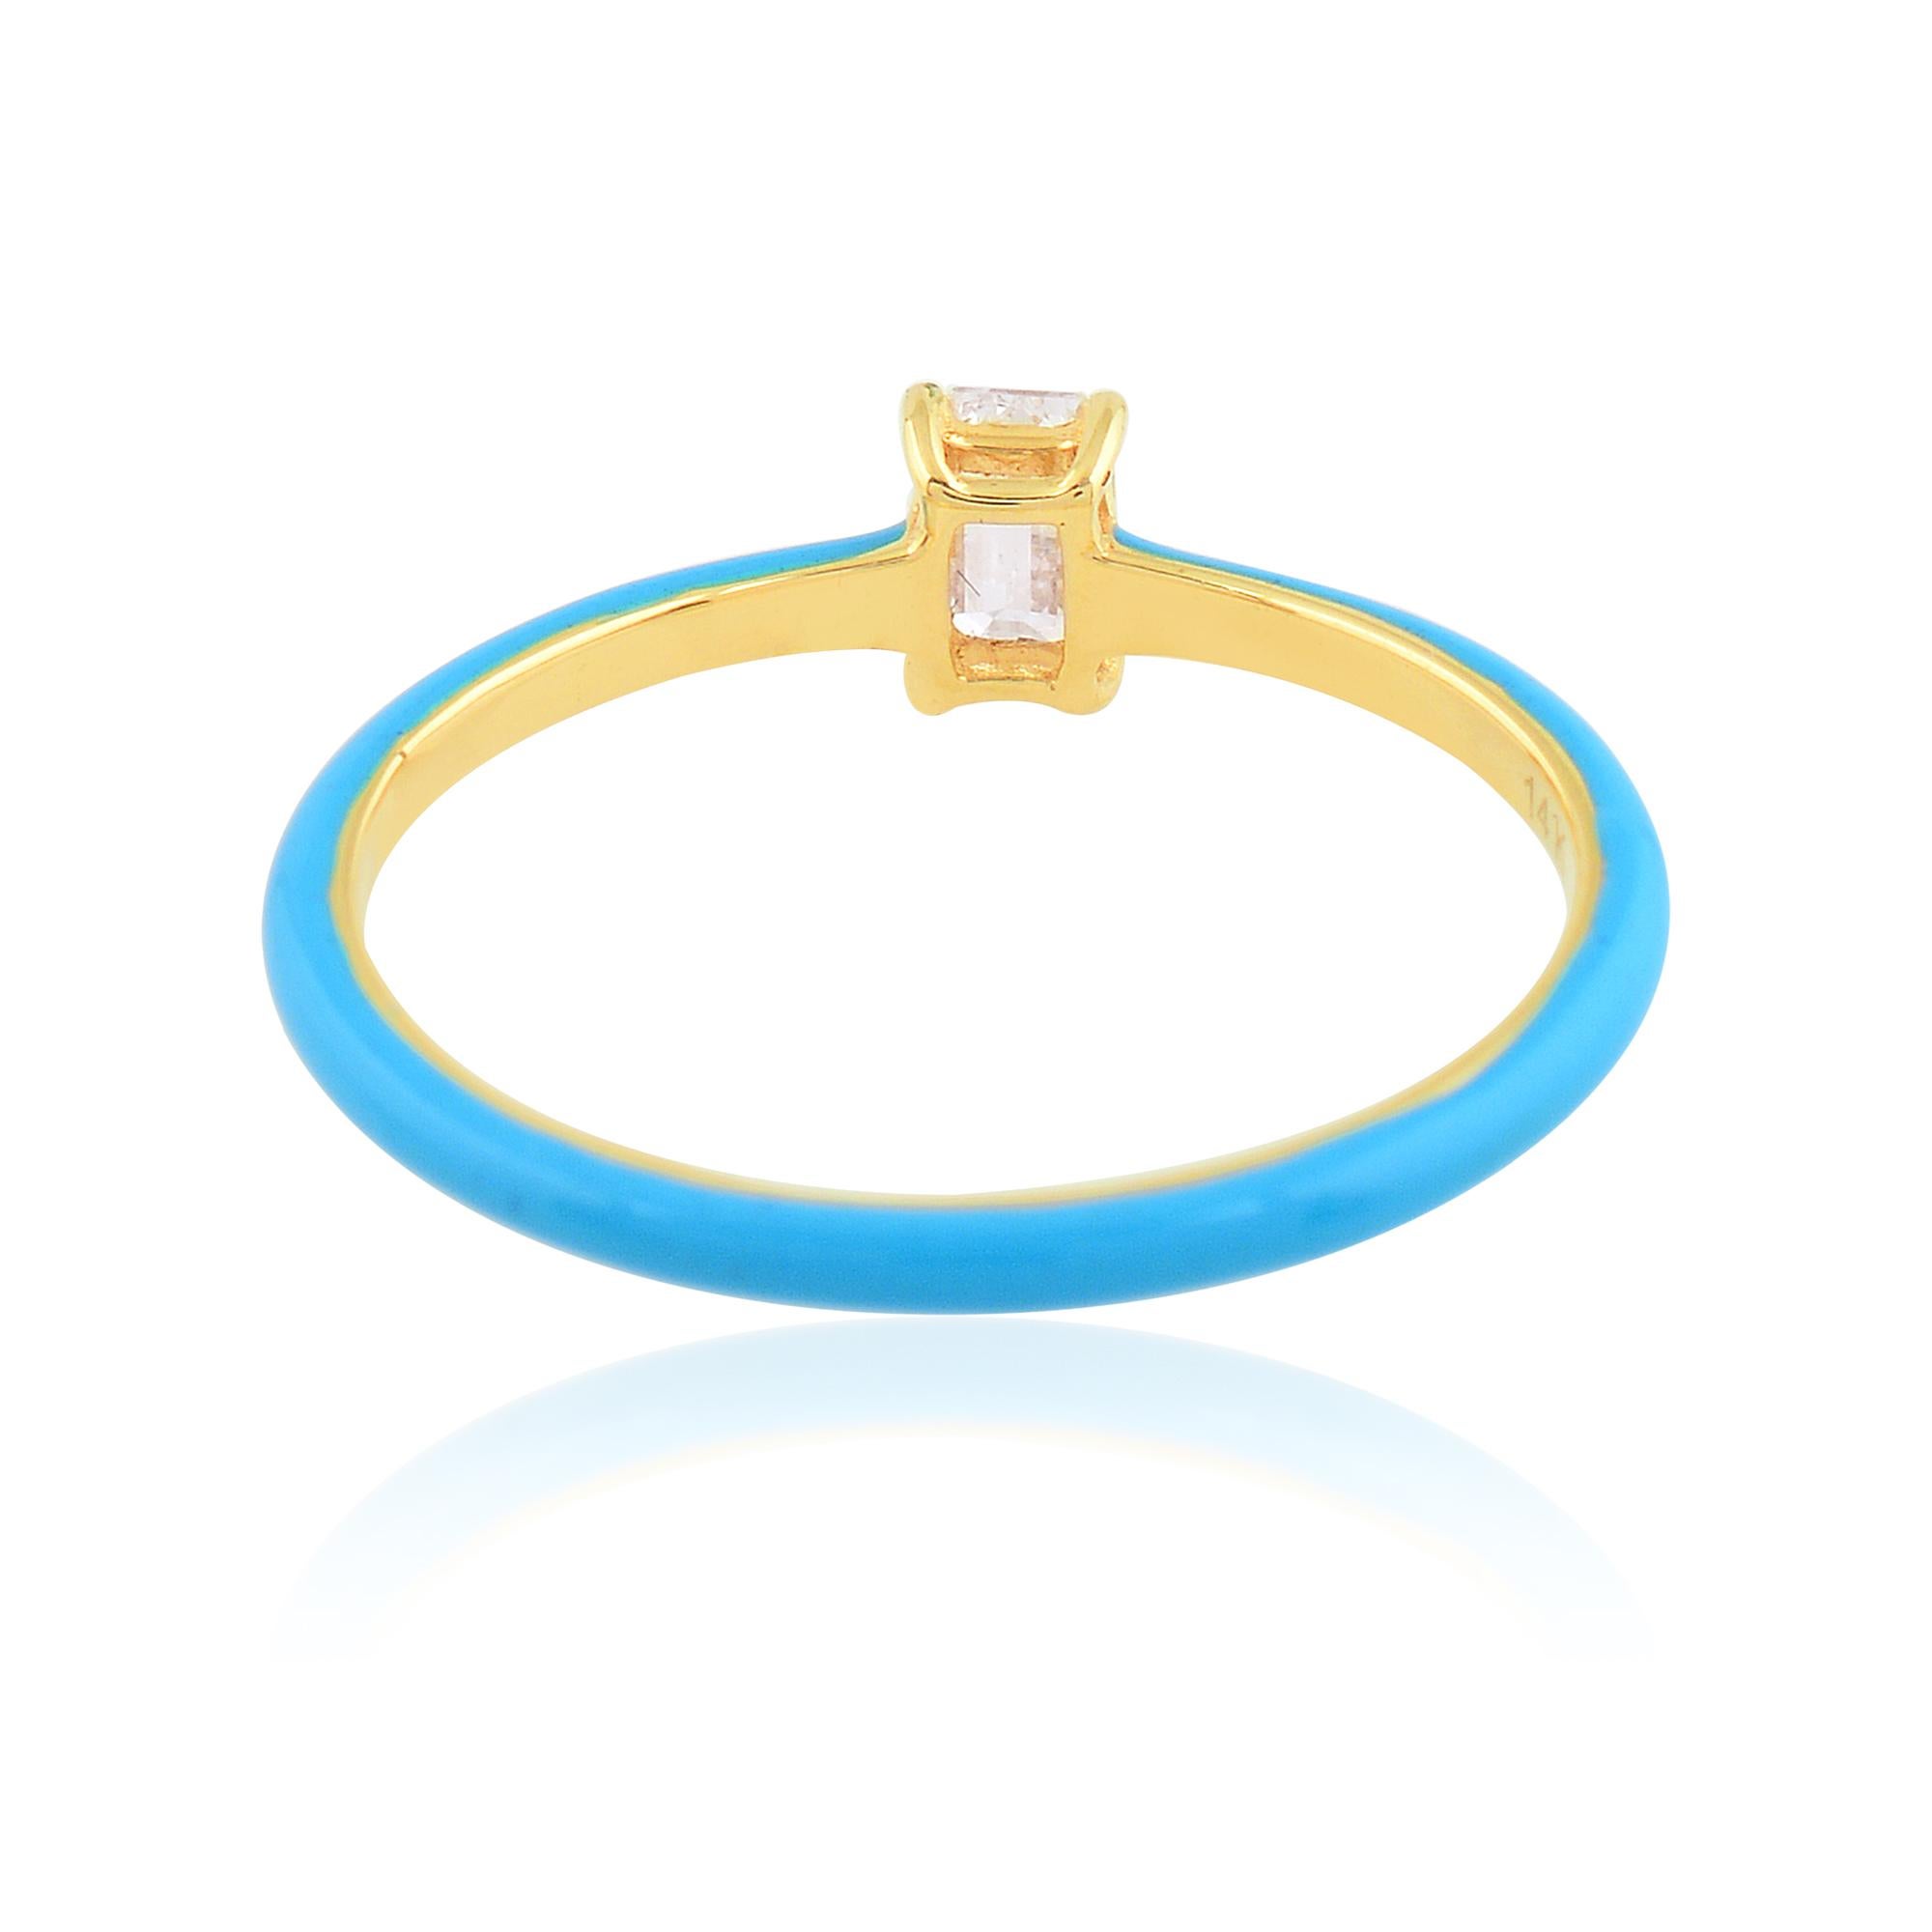 Artikel-Code :- SFR-2026
Bruttogewicht :- 1.14 gm
14k Gelbgold Gewicht :- 1,09 gm
Diamant Gewicht :- 0,24 Karat  ( DURCHSCHNITTLICHE DIAMANT-REINHEIT SI1-SI2 & FARBE H-I )
Ring Größe :- 7 US & Alle Ringgröße verfügbar

✦